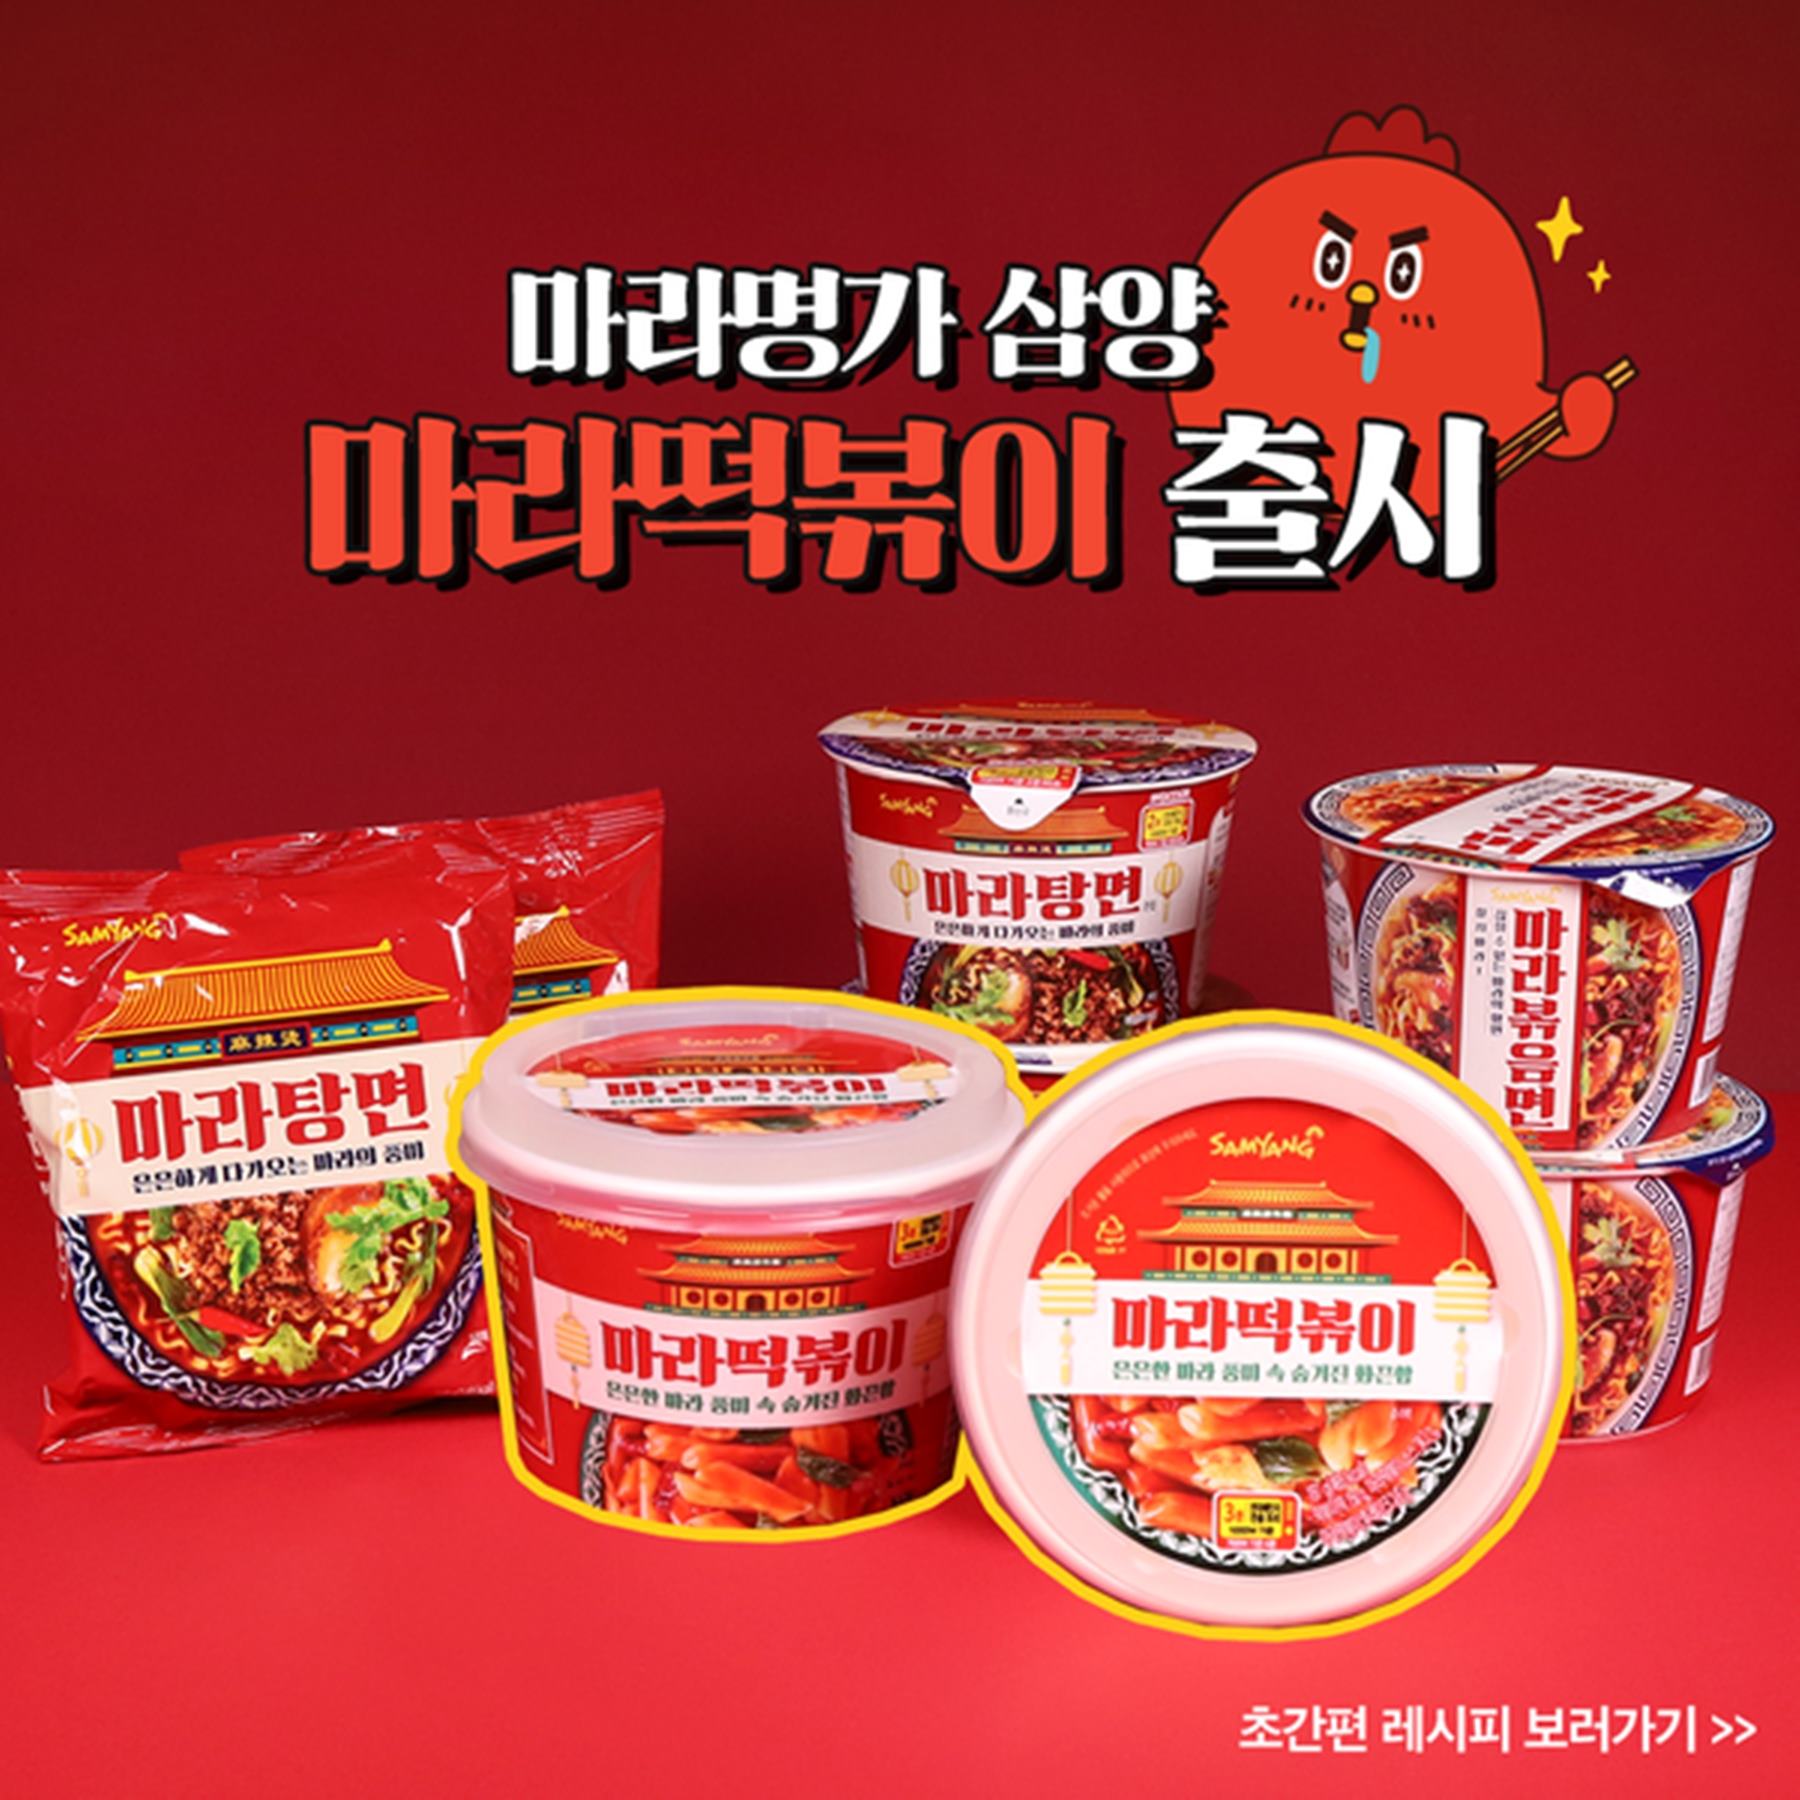 ▲마라탕을 모방한 제품들/출처: 삼양식품